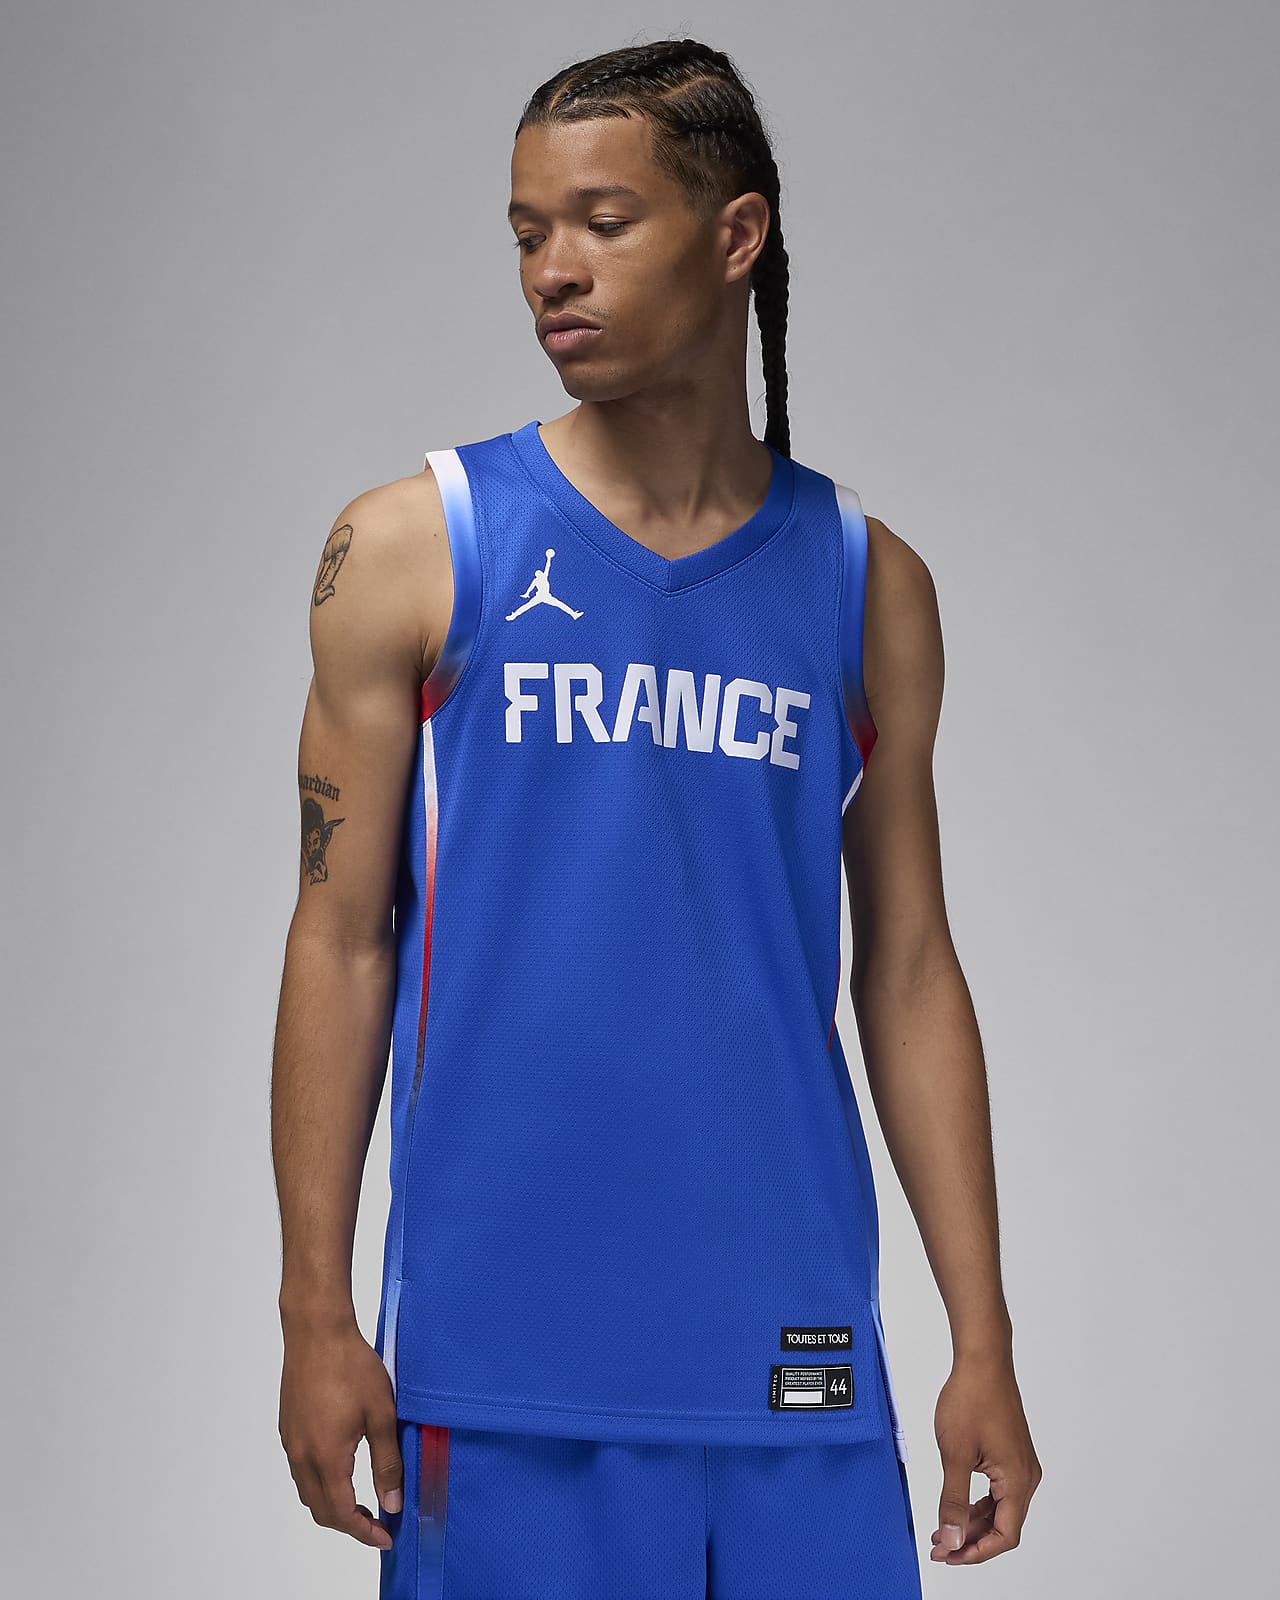 Frankreich Limited Road Jordan Basketballtrikot (Herren)